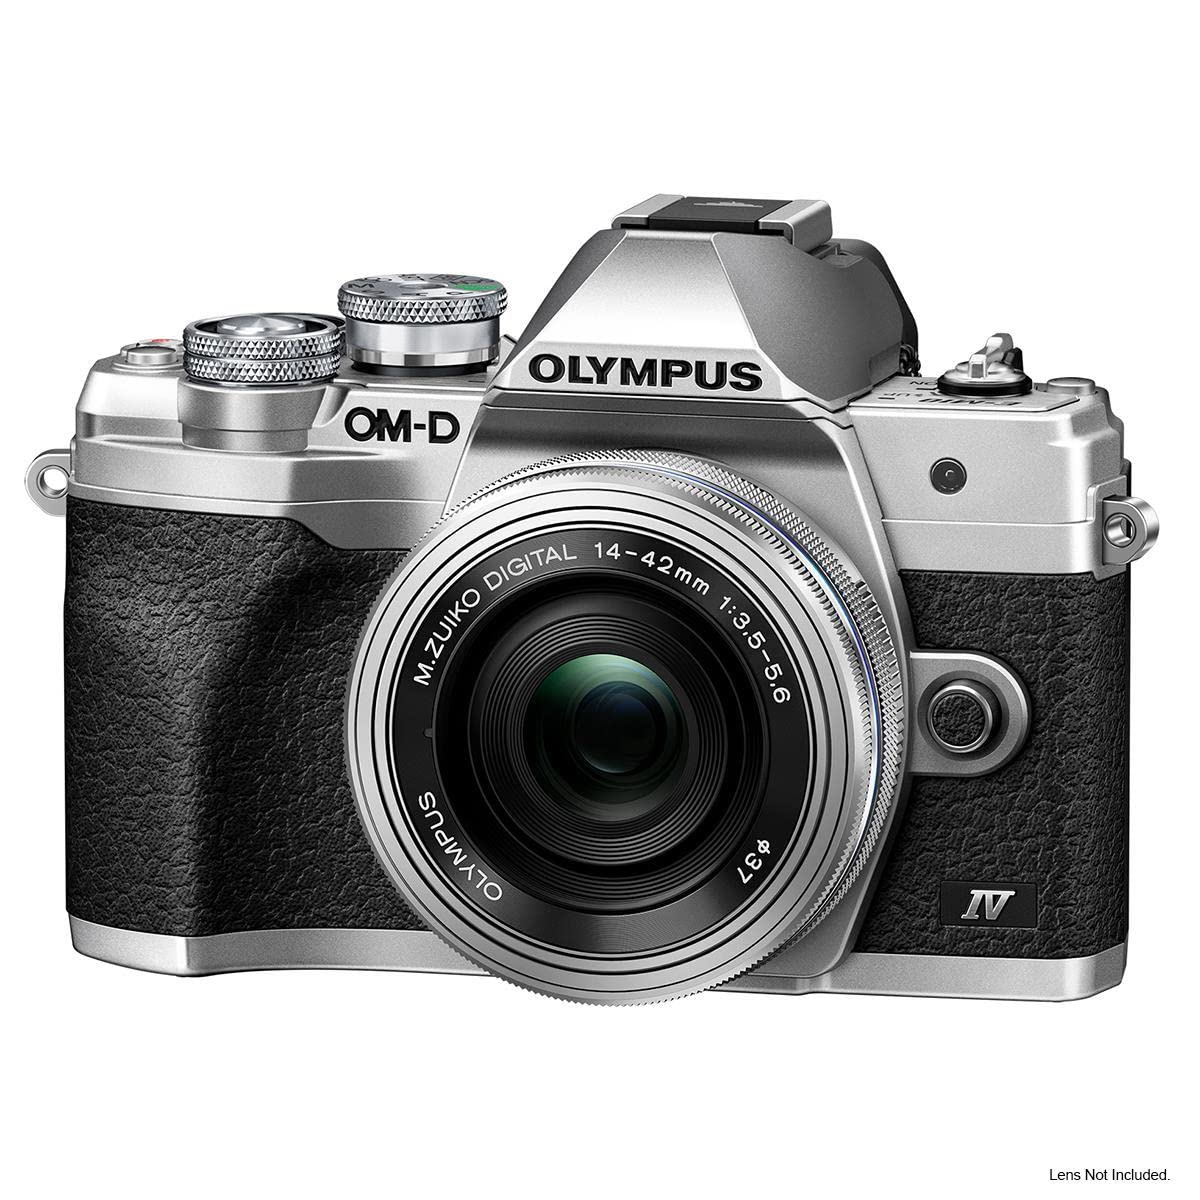 Olympus OM-D E-M10 Mark IV Mirrorless Camera Body, Silver with Olympus M. Zuiko 14-42mm f/3.5-5.6 II R Lens, Silver